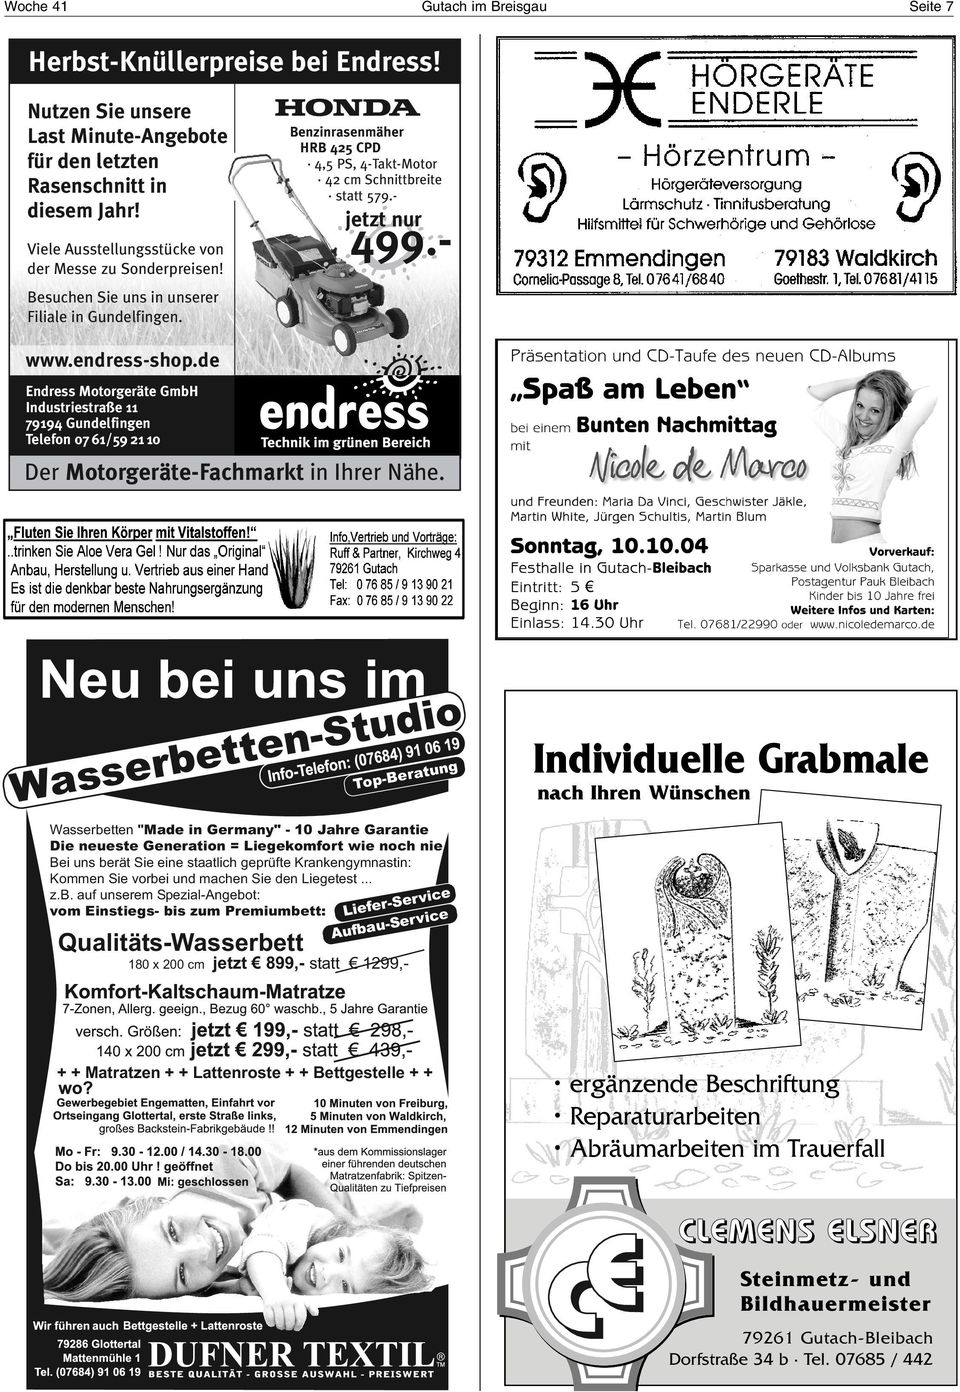 - jetzt nur www.endress-shop.de Endress Motorgeräte GmbH Industriestraße 11 79194 Gundelfingen Telefon 0761/59 21 10 Der Motorgeräte-Fachmarkt in Ihrer Nähe.